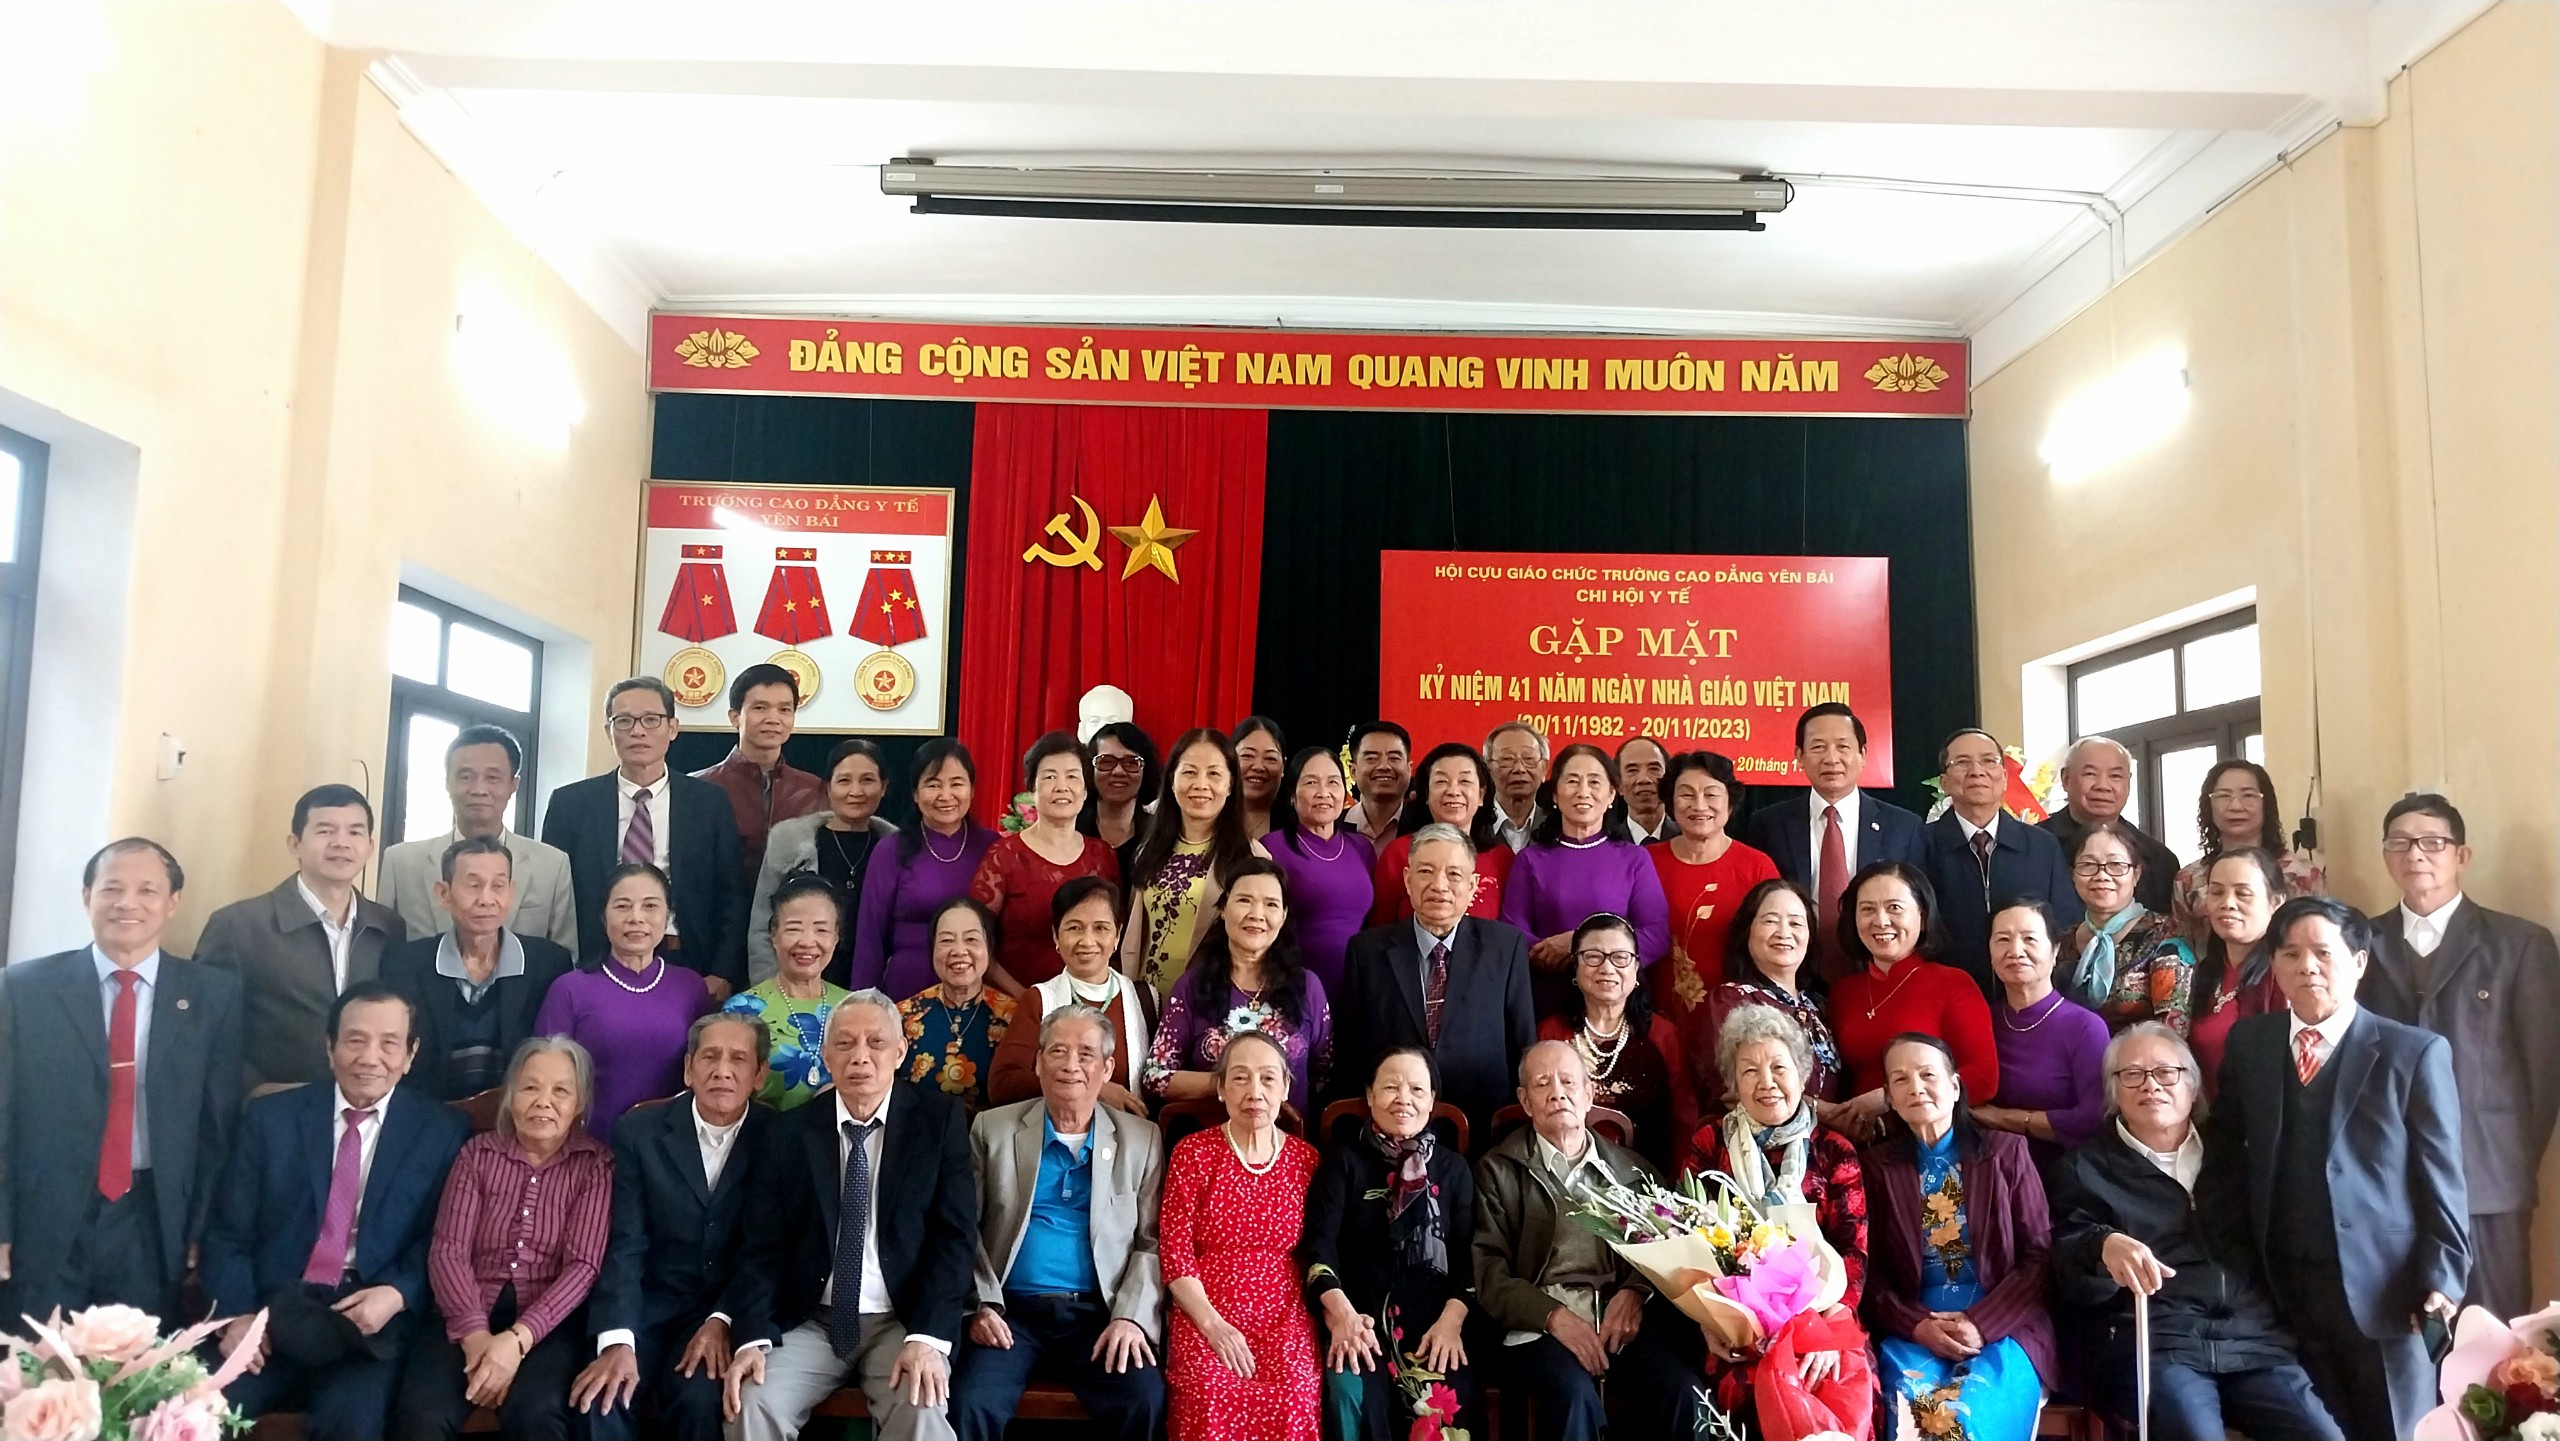 Chi hội Y tế Hội Cựu giáo chức Trường Cao đẳng Yên Bái tổ chức Gặp mặt kỷ niệm 41 năm ngày Nhà giáo Việt Nam (20/11/1982 - 20/11/2023)